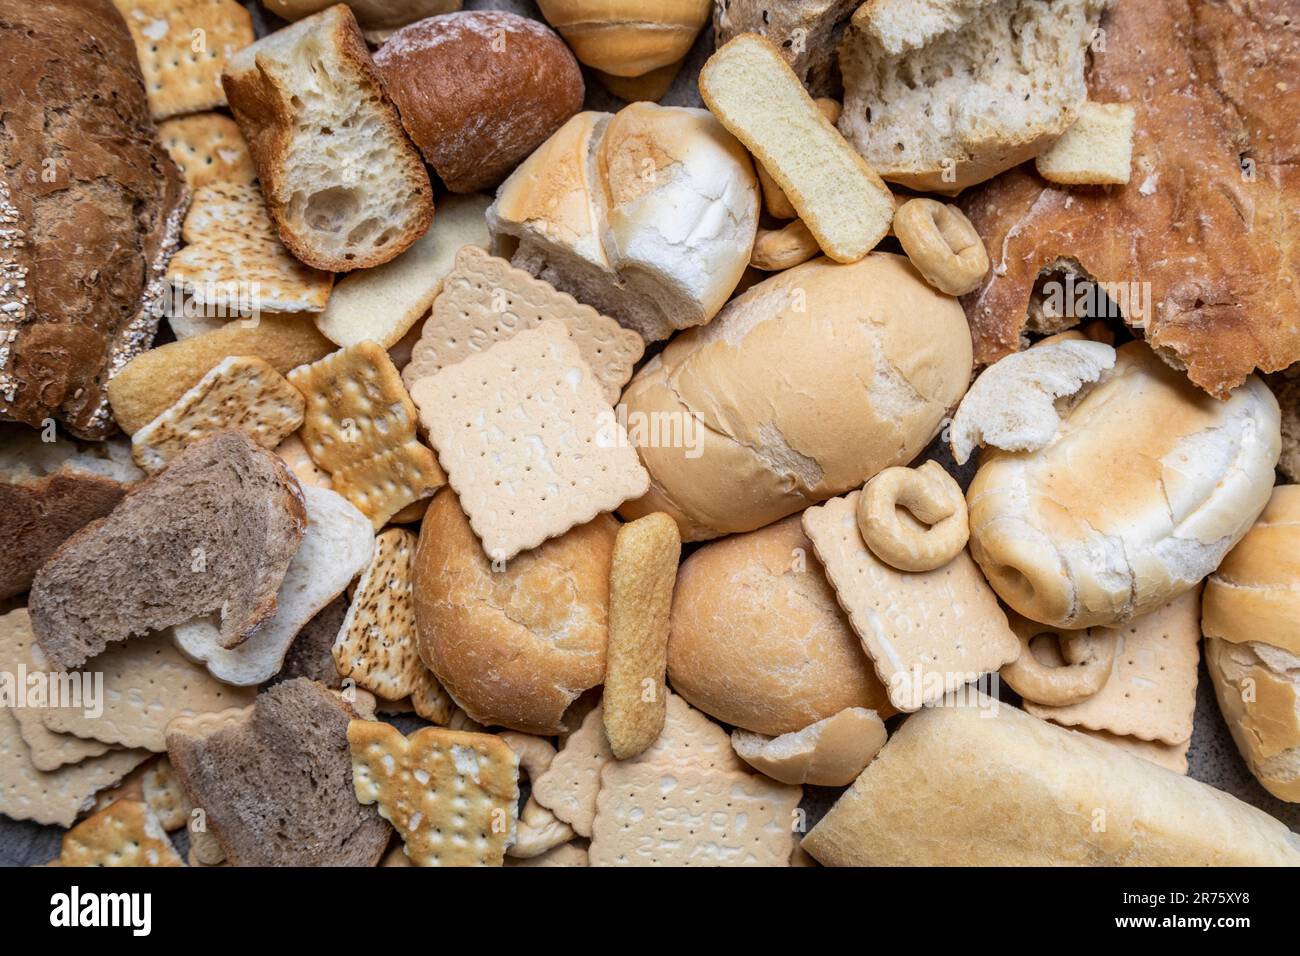 Italia, grande quantità di pane raffermo in diversi formati, scarti alimentari, cibo non consumato Foto Stock